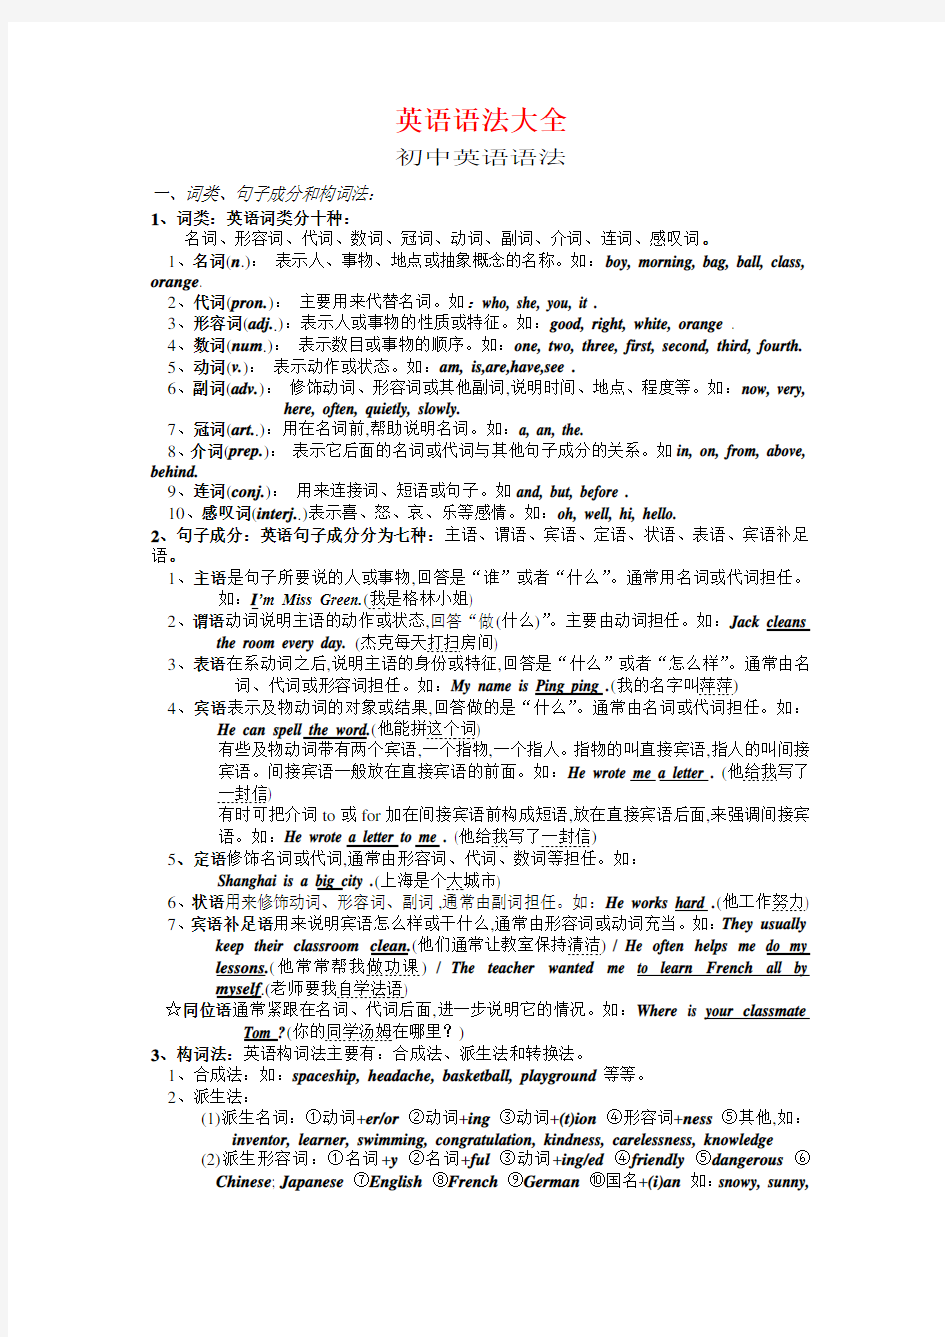 初中英语语法大全-上海重点中学语法整理